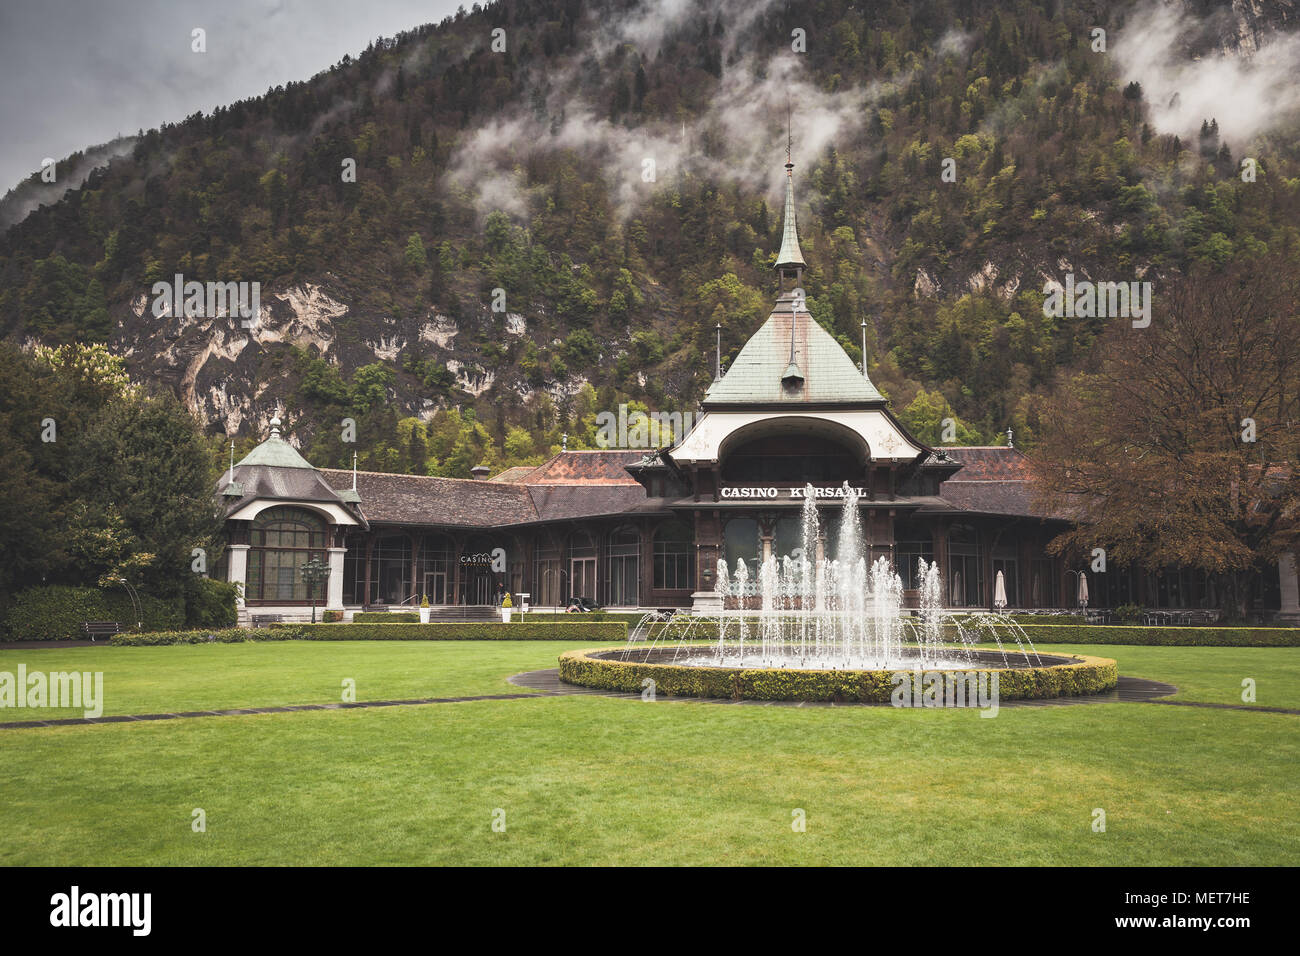 Interlaken, Schweiz - 5. Mai 2017: Casino Kursaal, ein Gebäude auf dem Territorium der Gemeinde Interlaken, Bern, Schweiz. Vintag Stockfoto